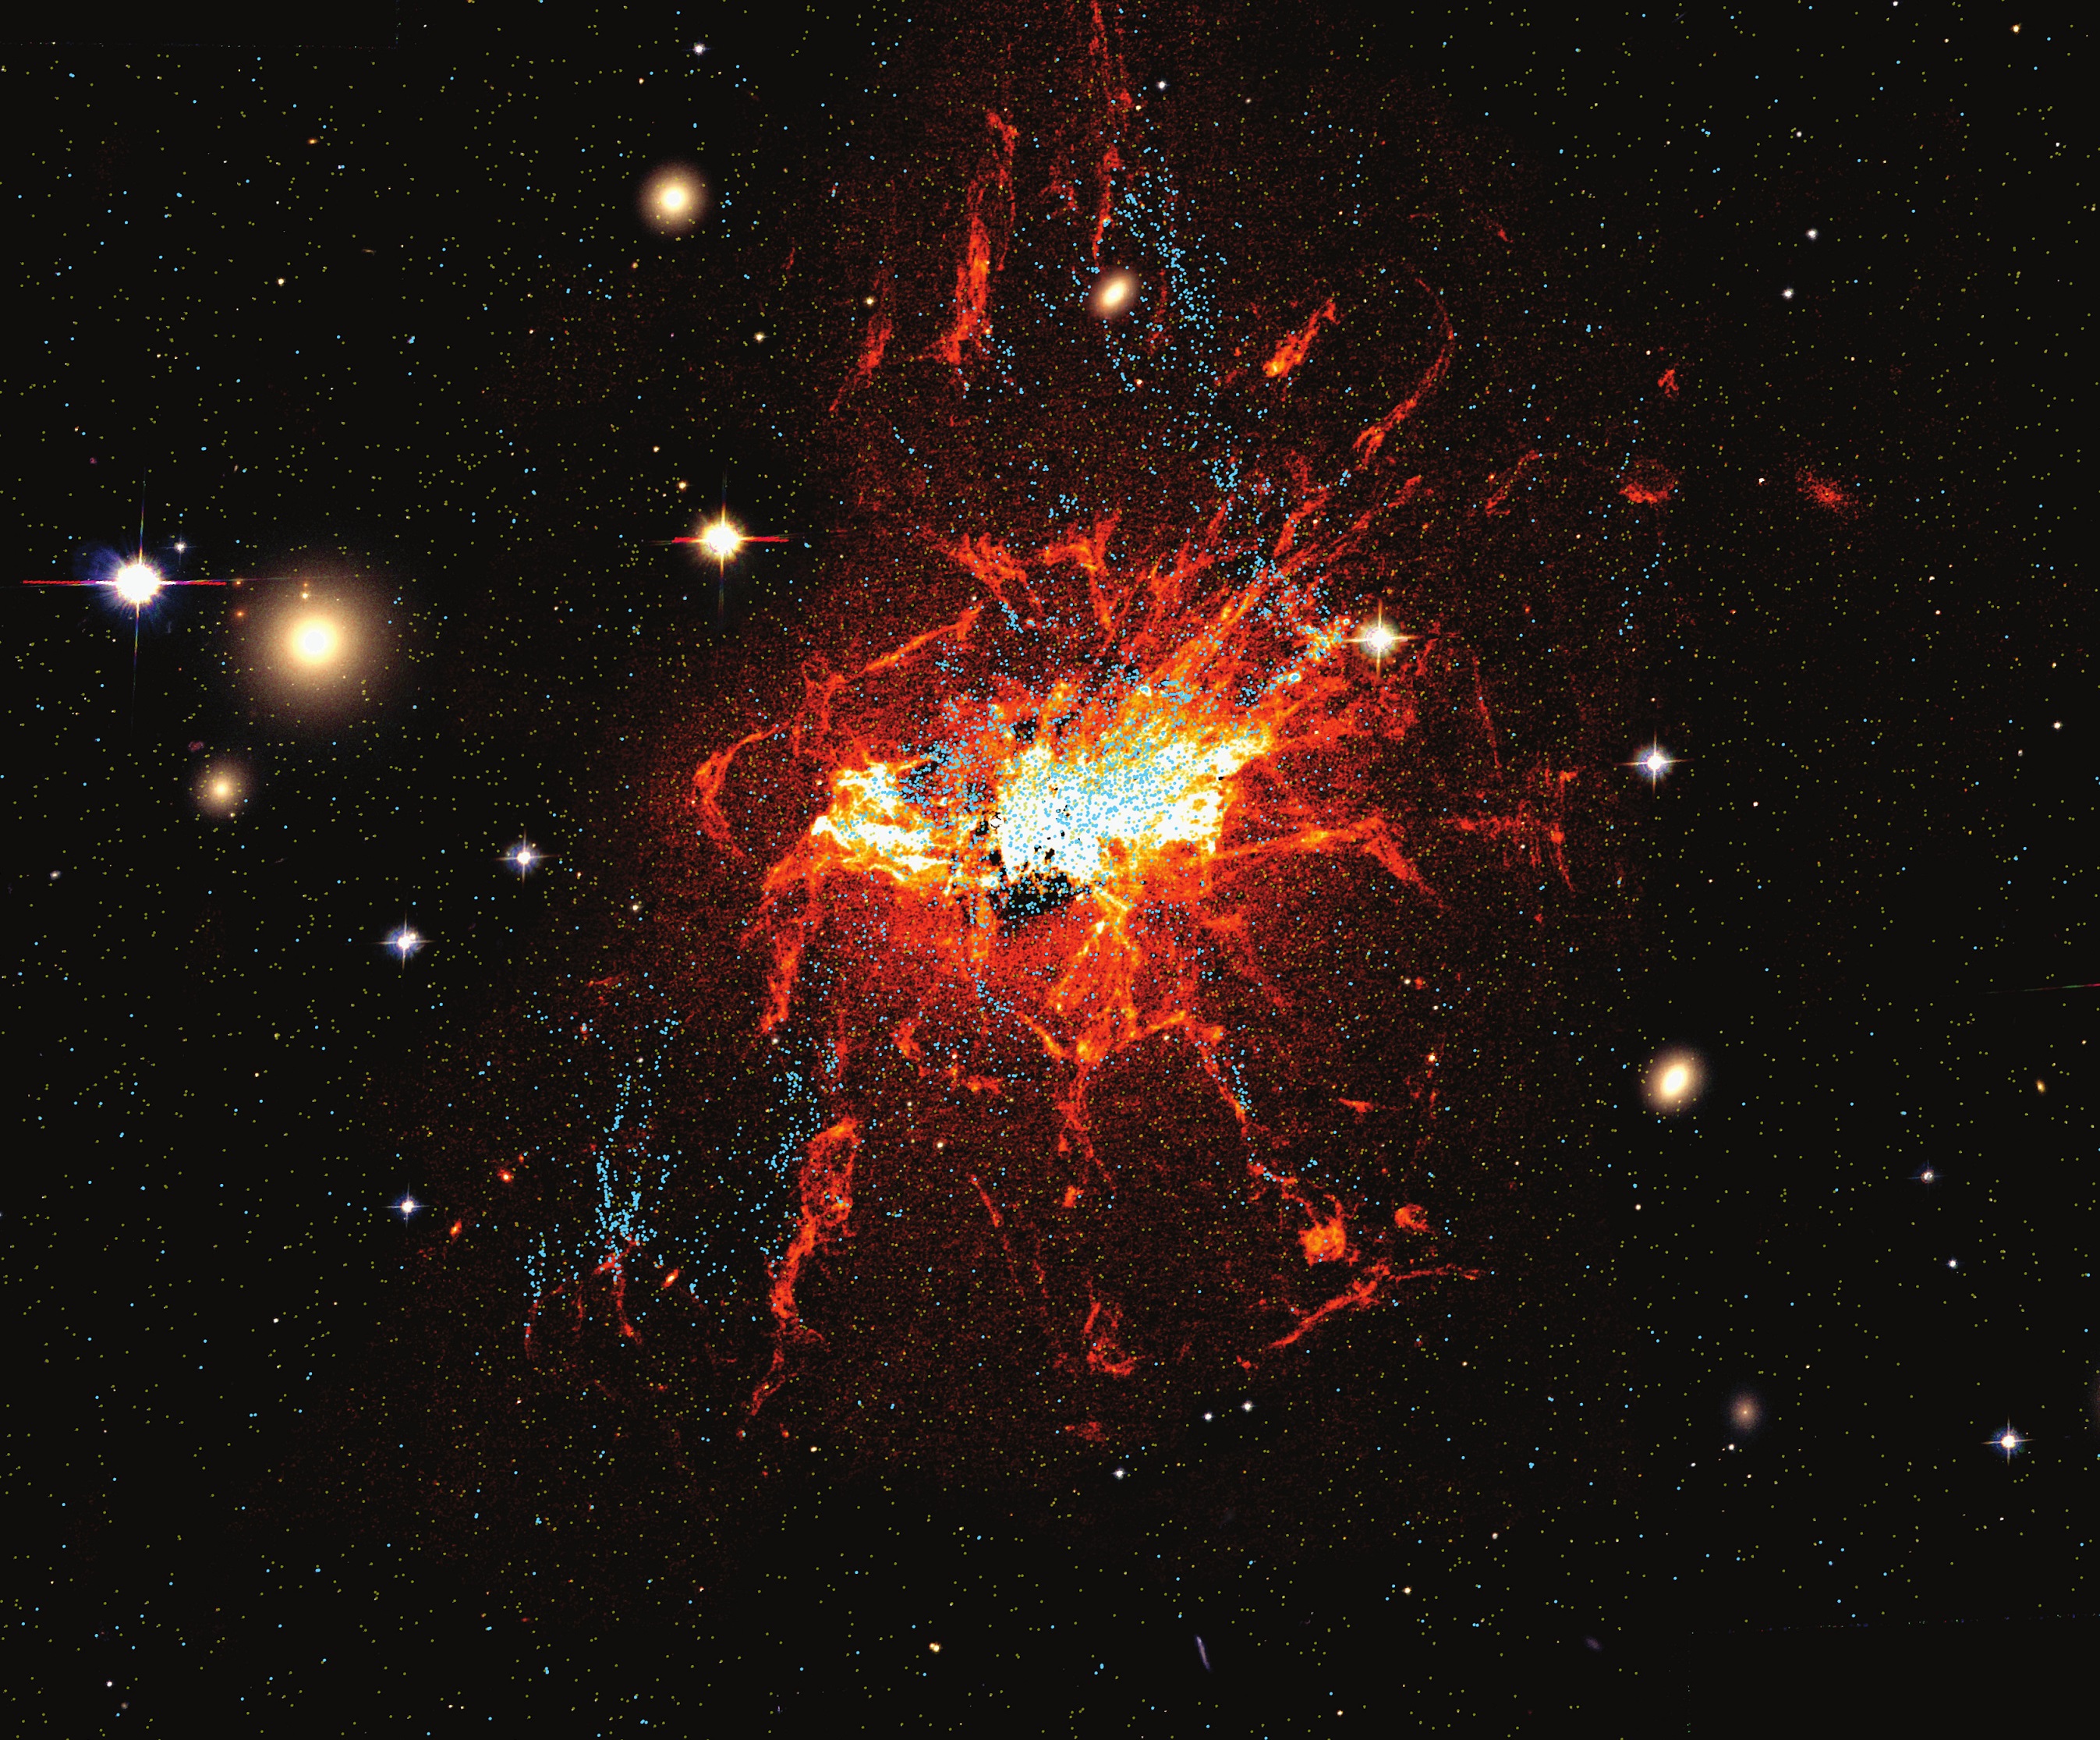 Hubble teleskopio espazialeko irudia: kumulu globular gazteak urdinez ikusten dira, eta gas hotzeko filamentuak, gorriz.